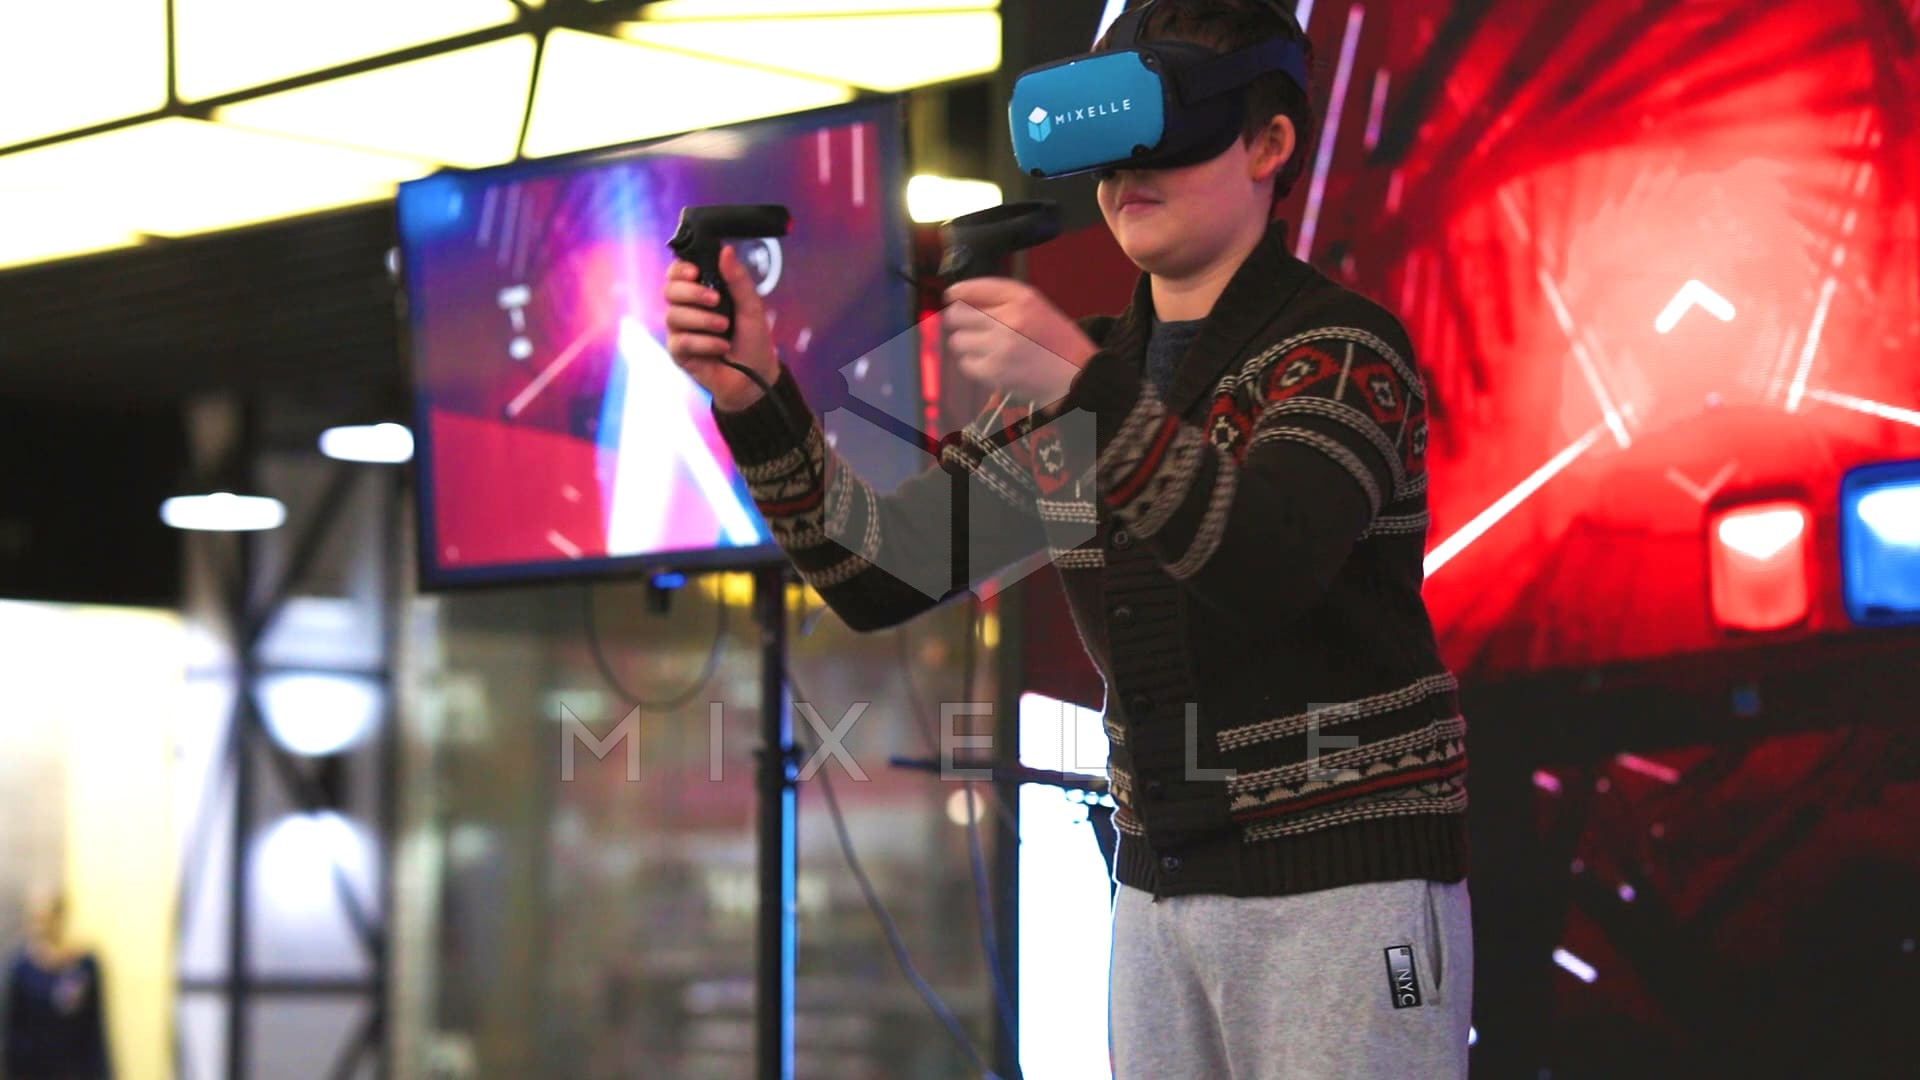 Аренда аттракциона "VR Джедай" на выездное мероприятие 